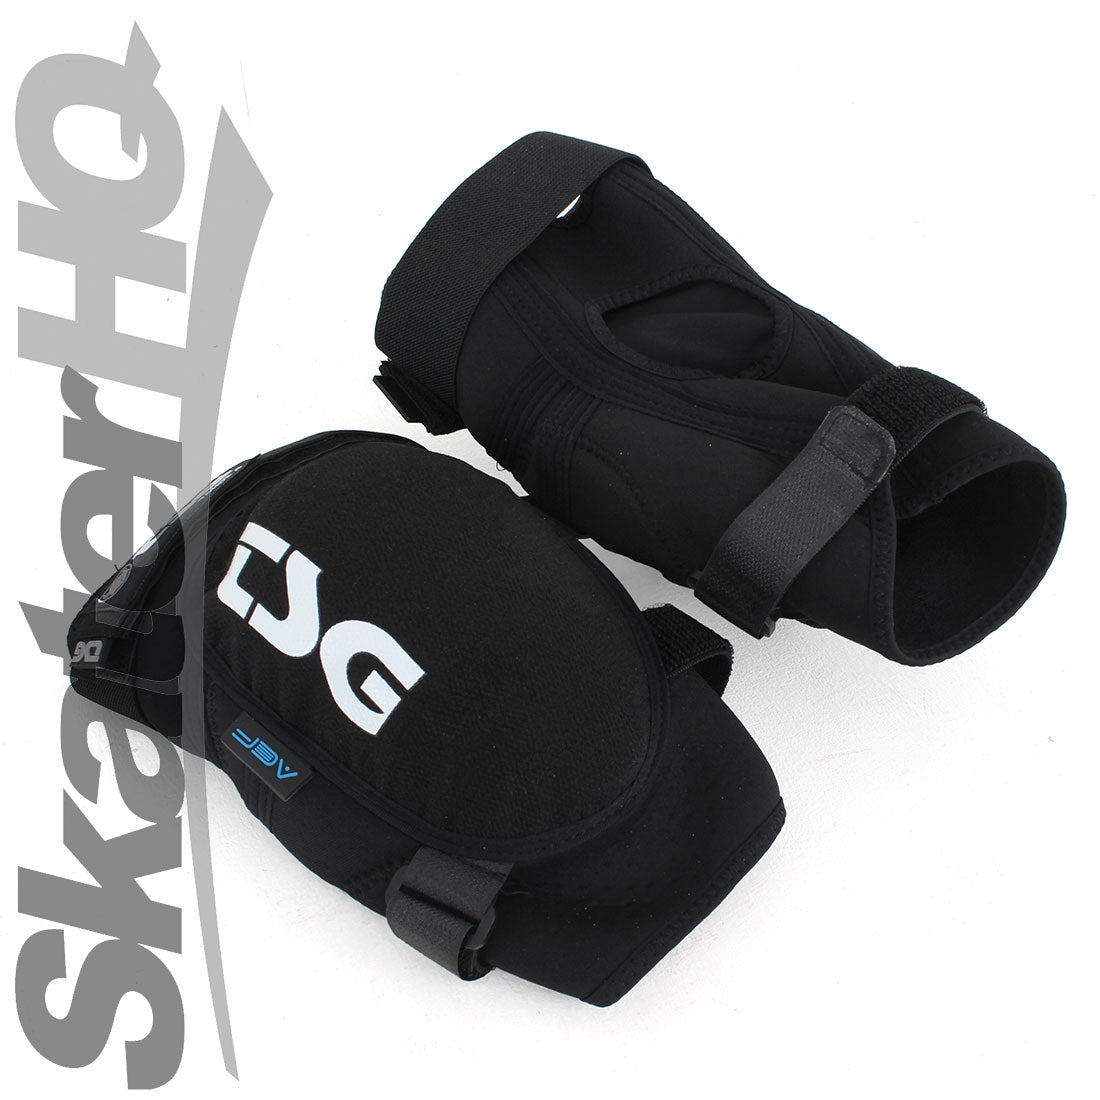 TSG Tahoe Arti-Lage Kneeguard Black - Medium Protective Gear